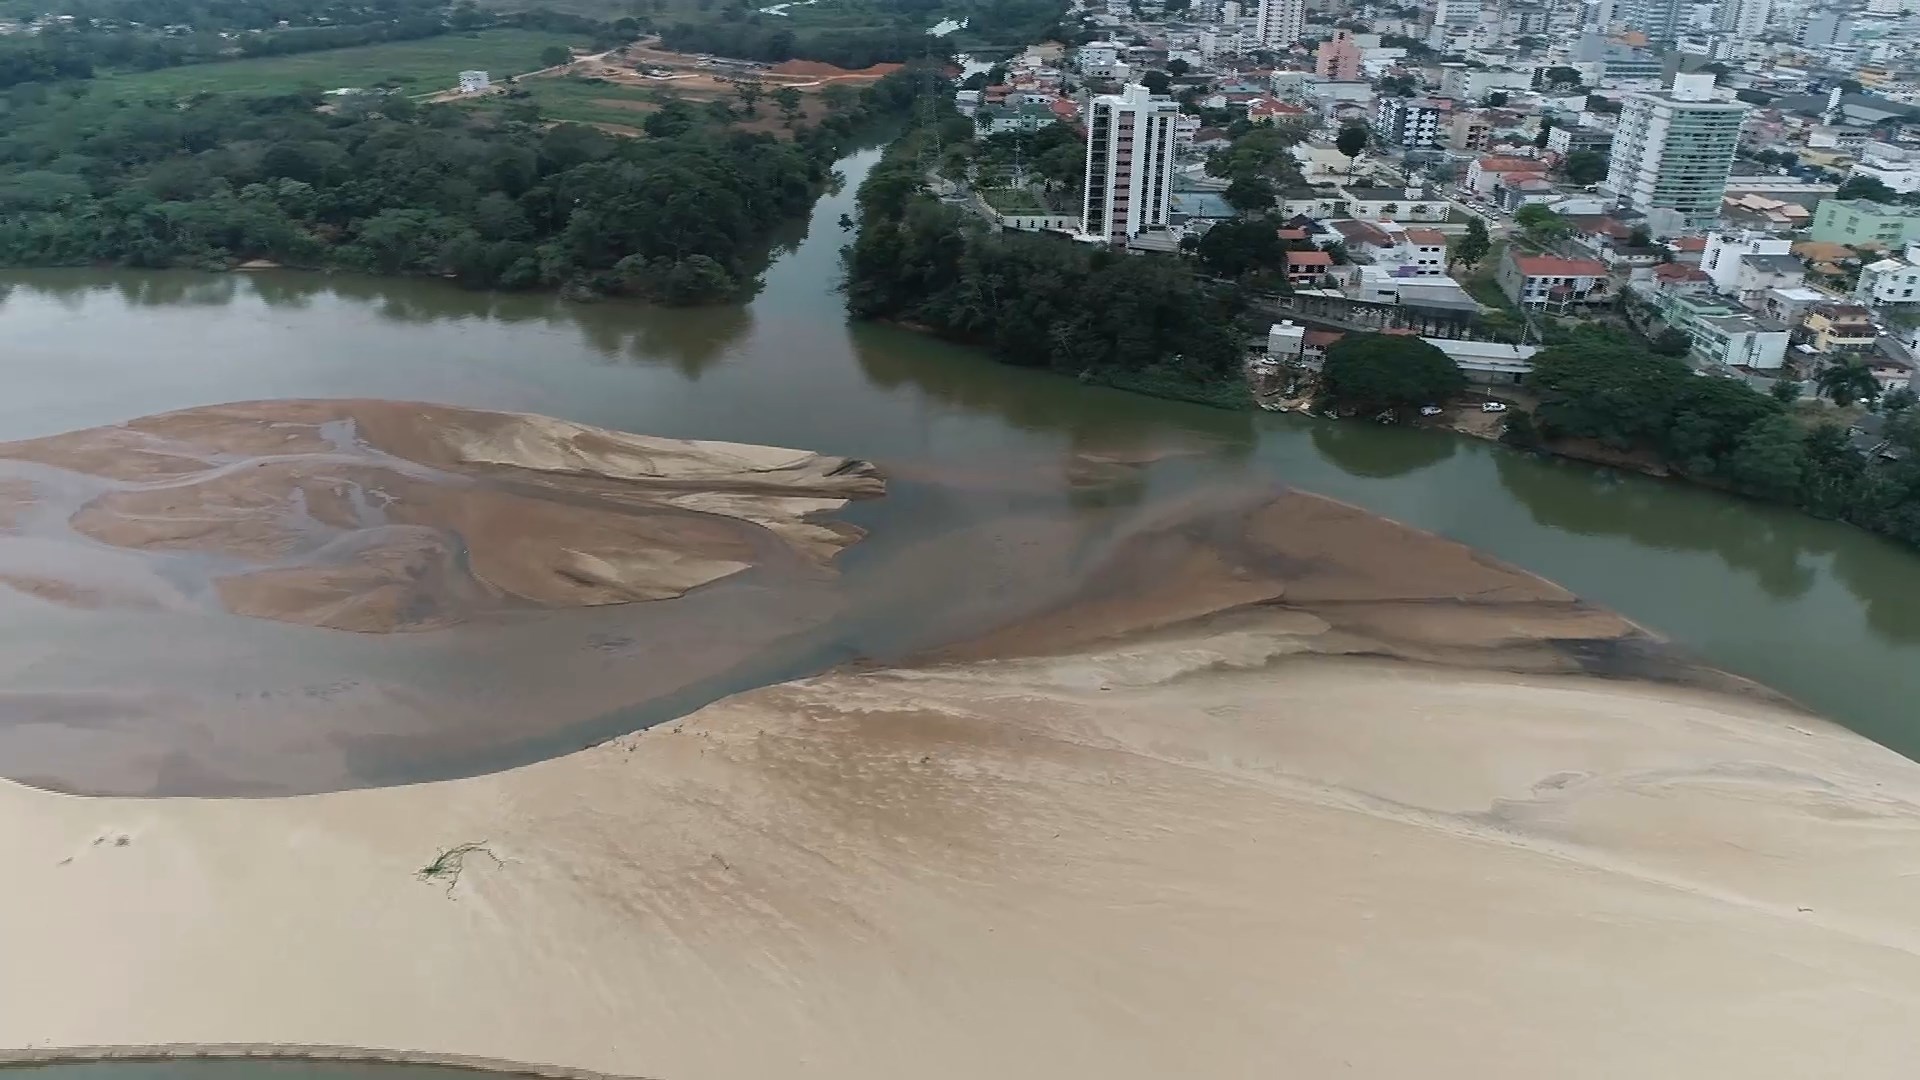 Especialistas explicam causas do assoreamento, como o desmatamento e a falta de chuva na região da bacia do rio nesta época do ano